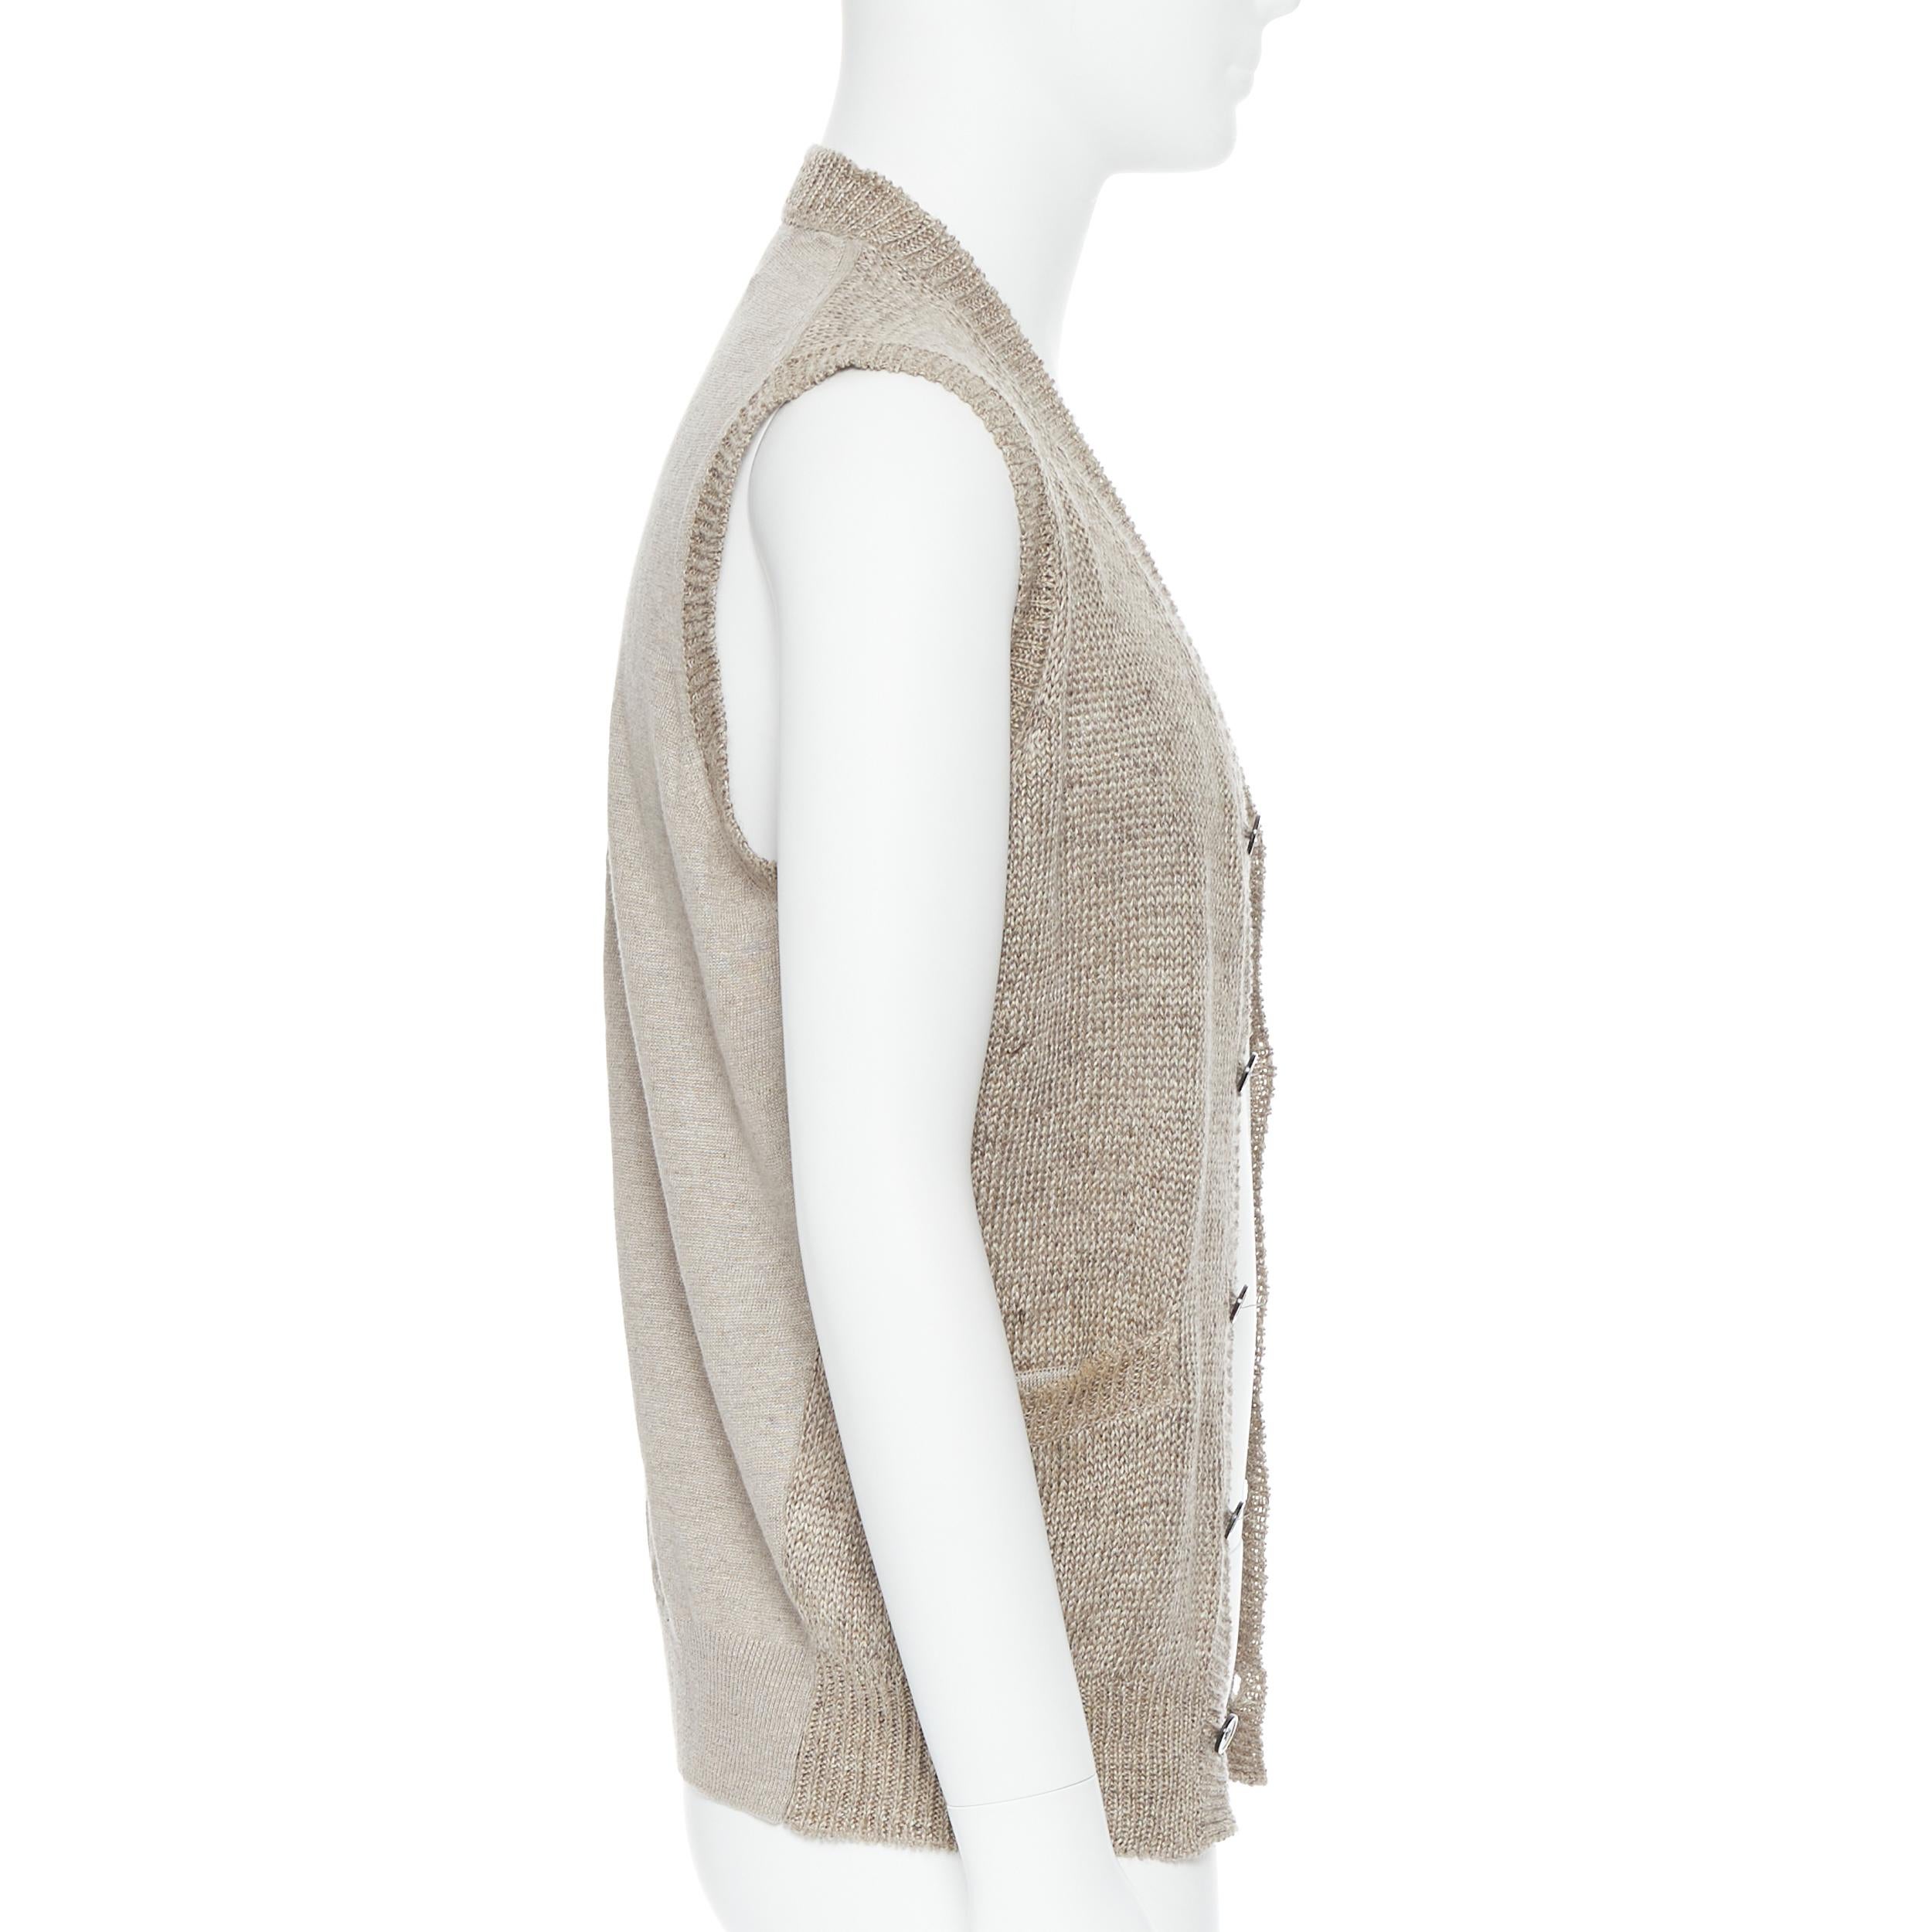 Beige COMME DES GARCONS 2009 100% linen beige knit cardigan vest sweater M